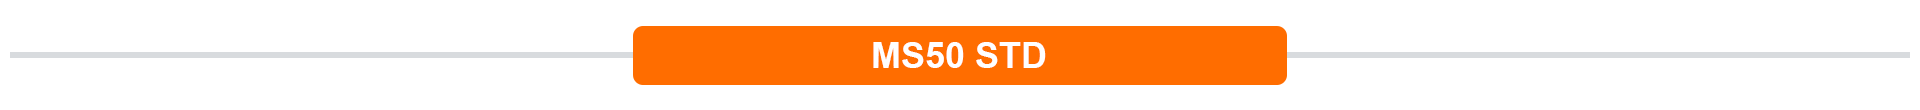 MS50 STD